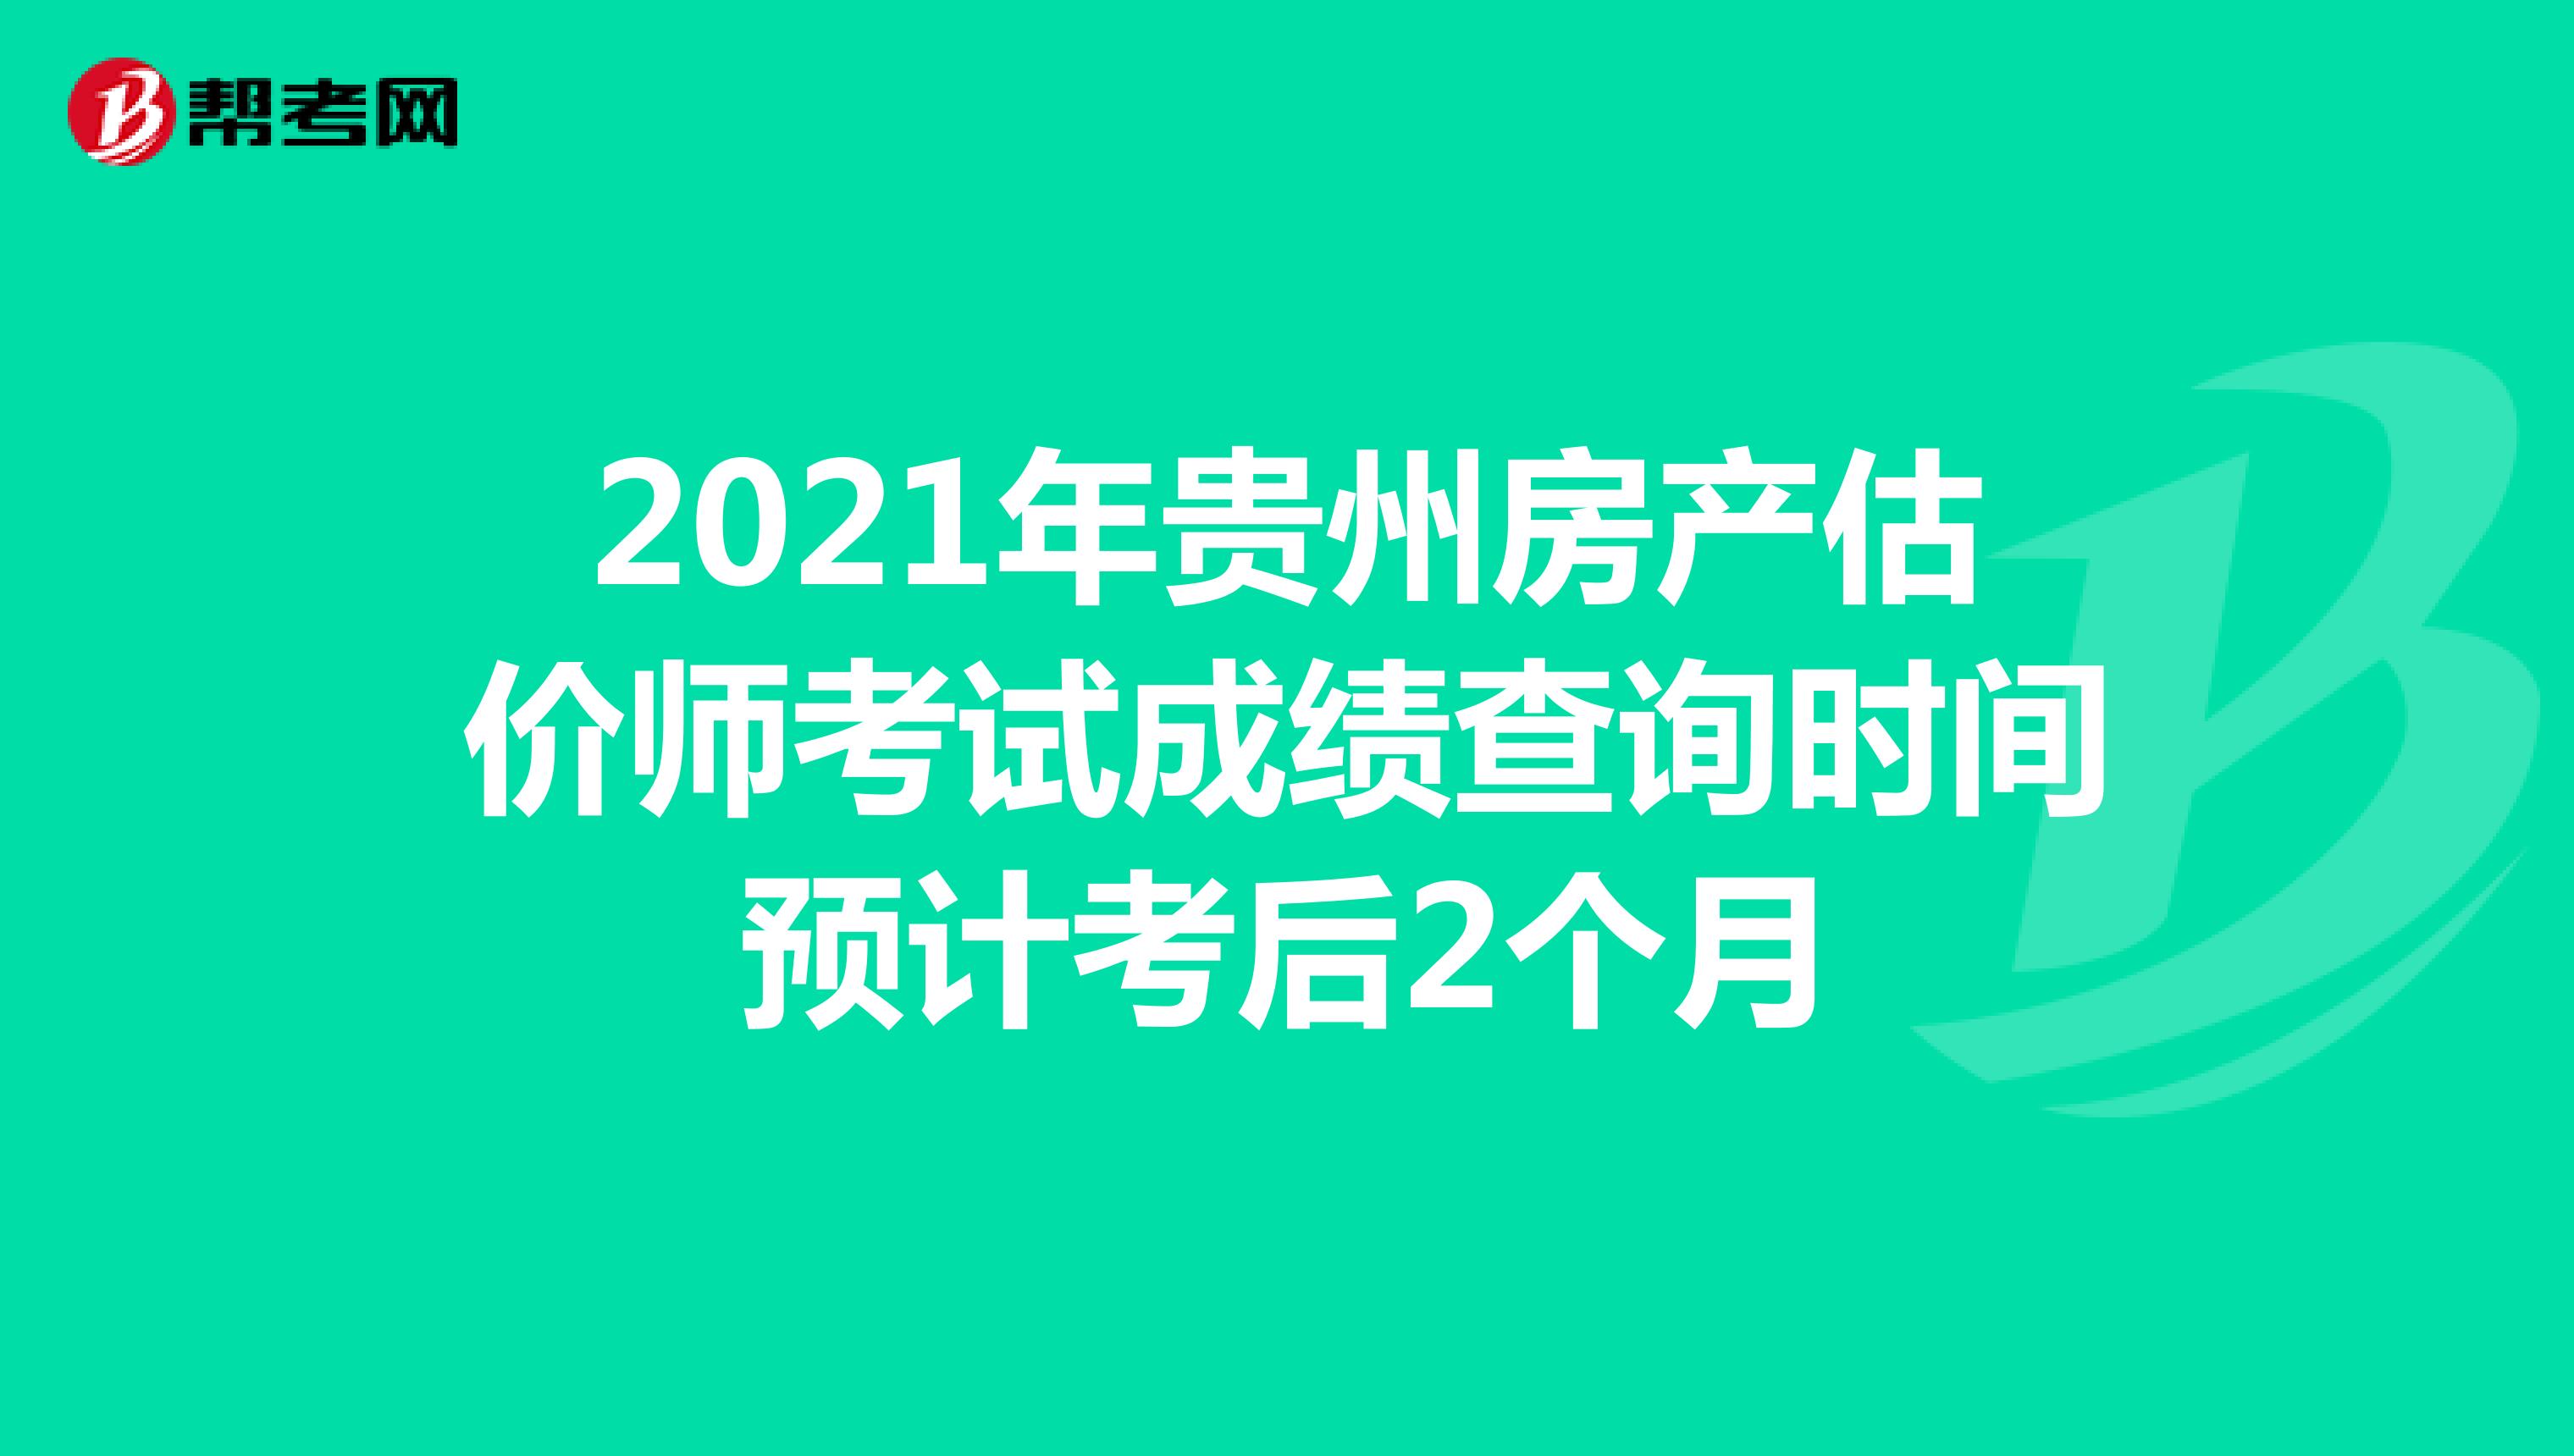 2021年贵州房产估价师考试成绩查询时间预计考后2个月